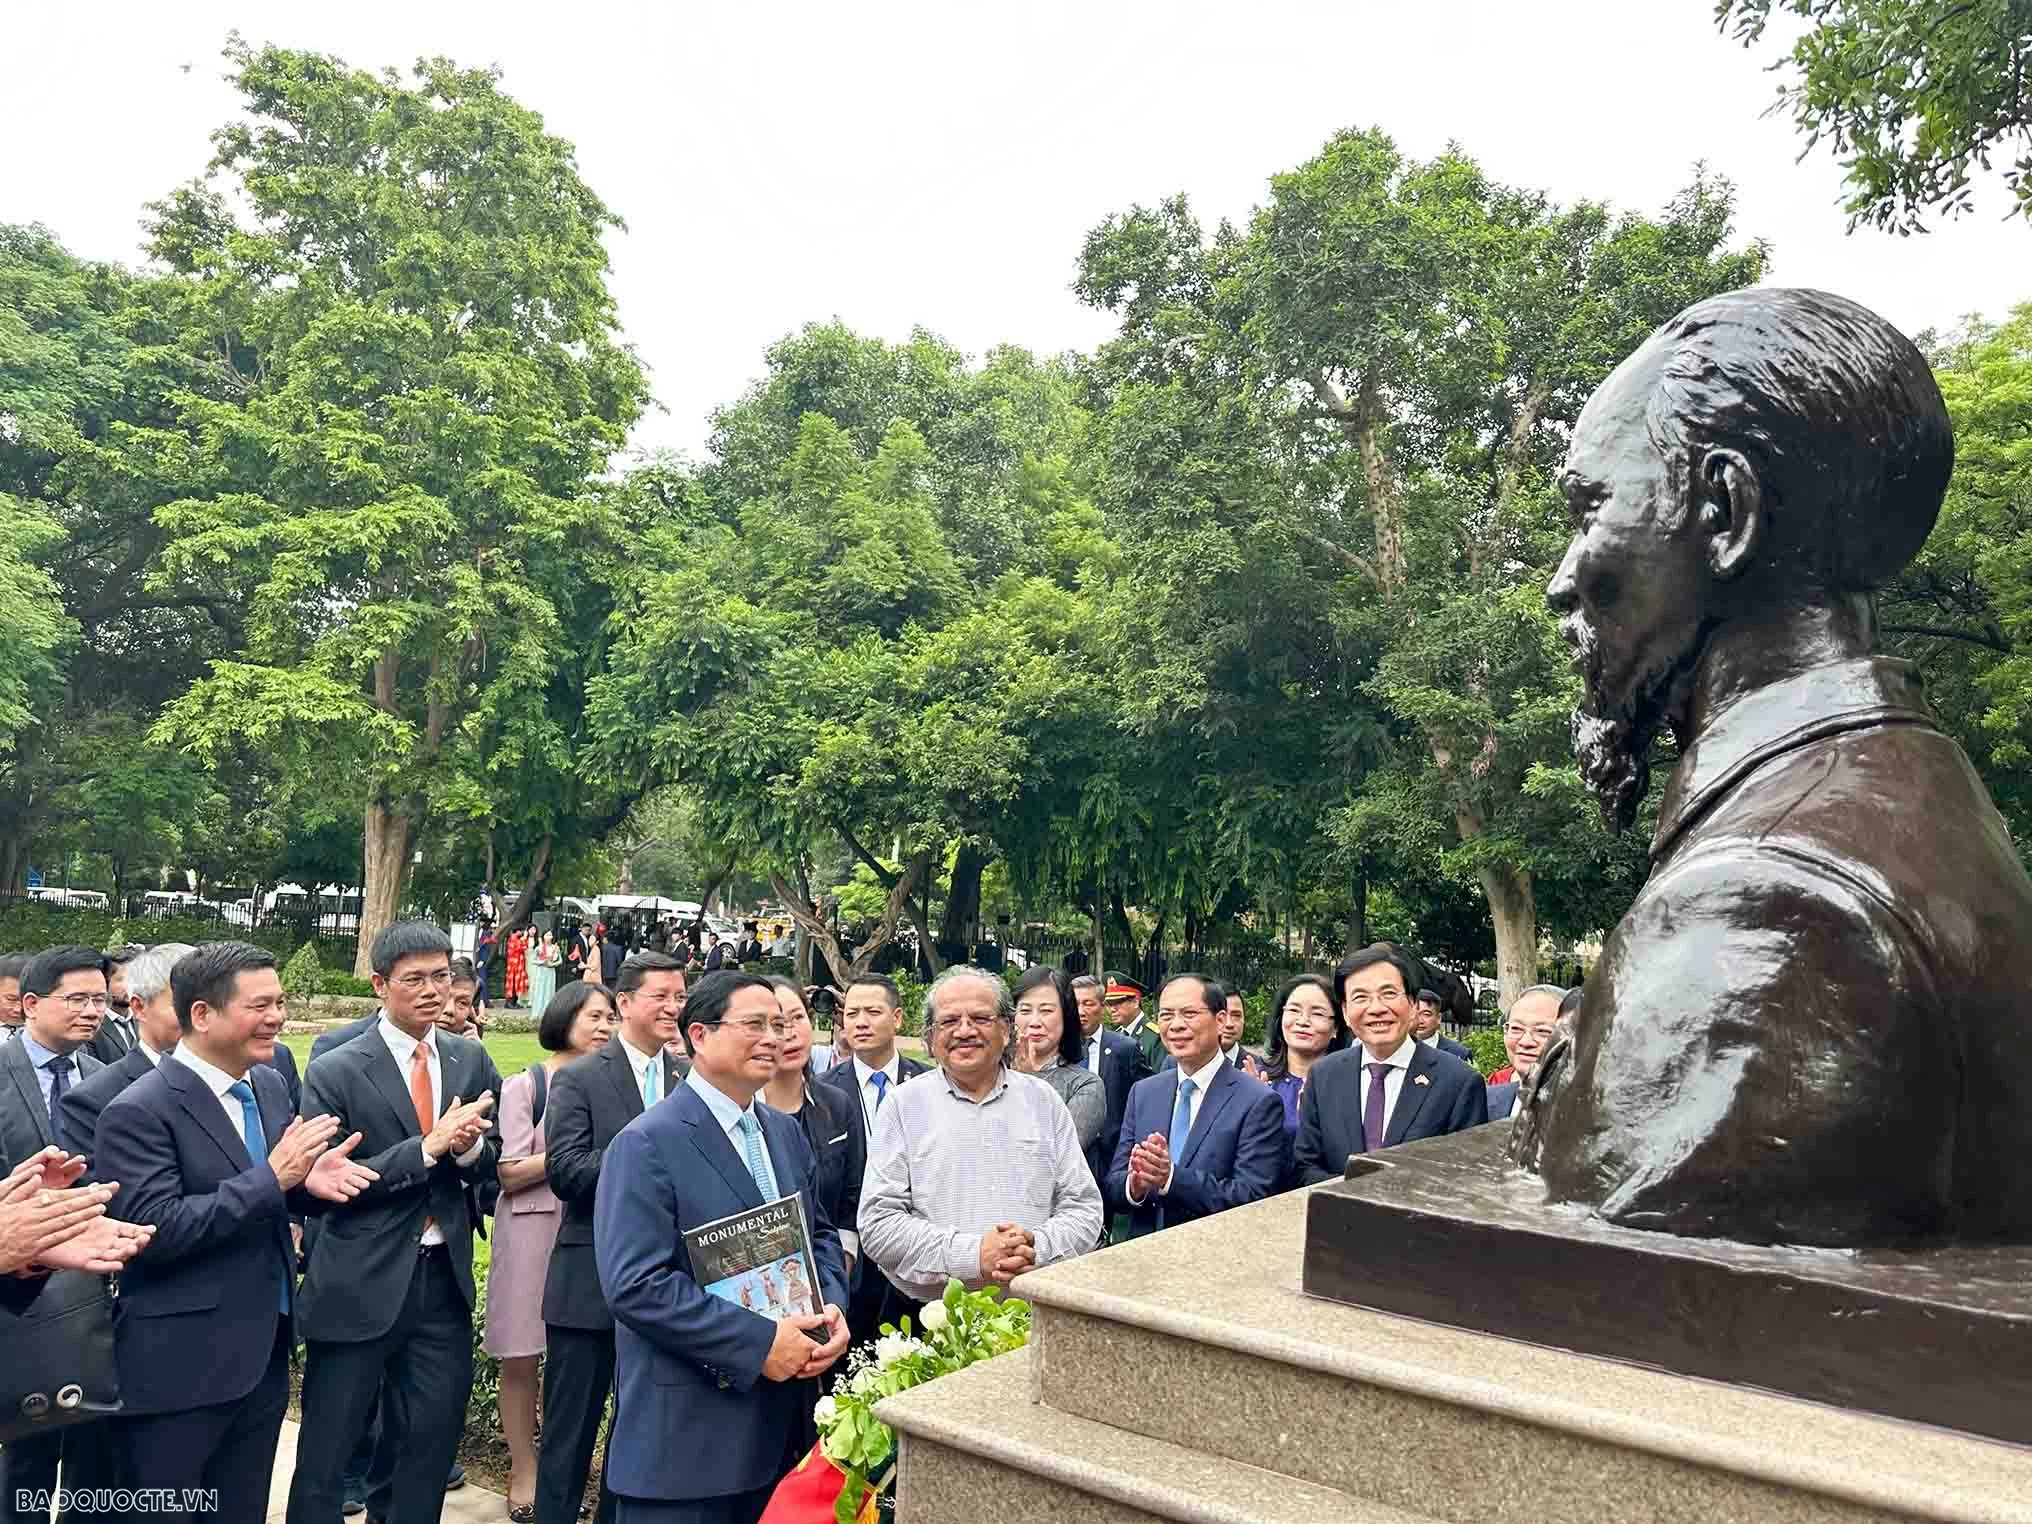 Bức tượng bằng đồng do nghệ sĩ Ram Sutar của Ấn Độ thiết kế, thực hiện và hoàn thiện trên cơ sở các góp ý của Hội đồng thẩm định nghệ thuật và được khánh thành năm 2021 nhân kỷ niệm 50 năm thiết lập quan hệ ngoại giao Việt Nam-Ấn Độ (1972 - 2022).